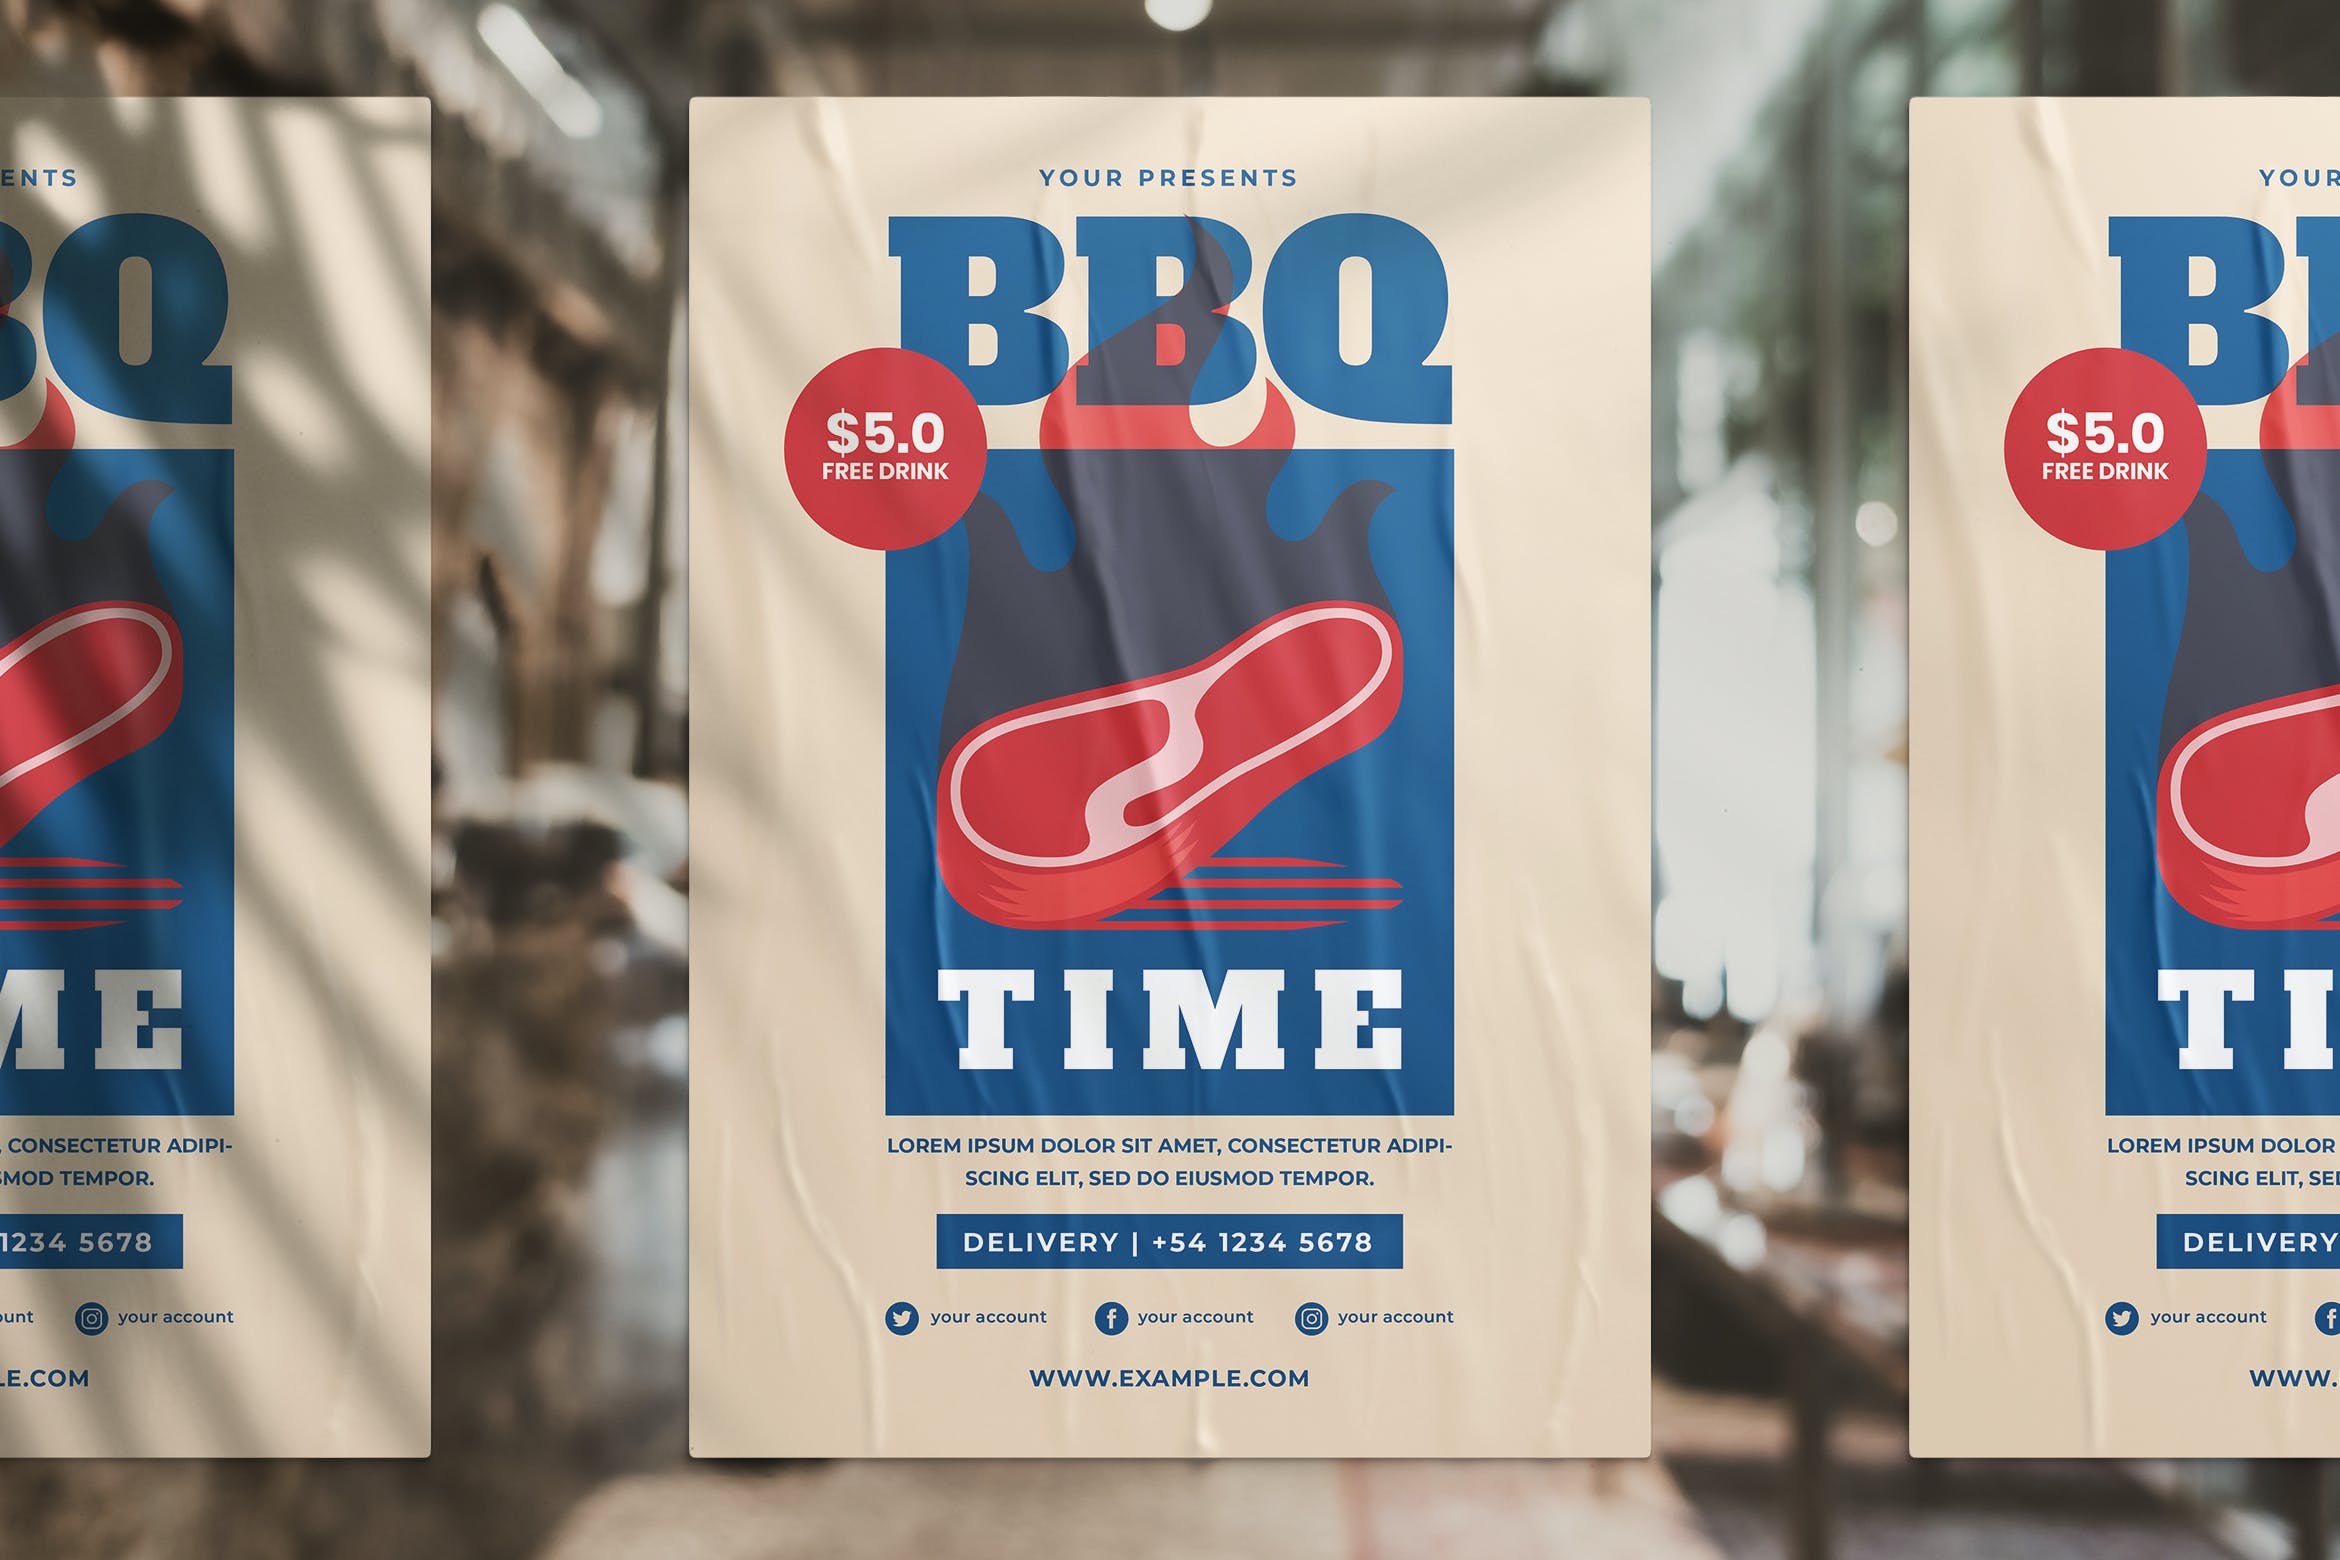 海报设计模板BBQ烧烤活动推广传单 BBQ Promotion Flyer设计素材模板